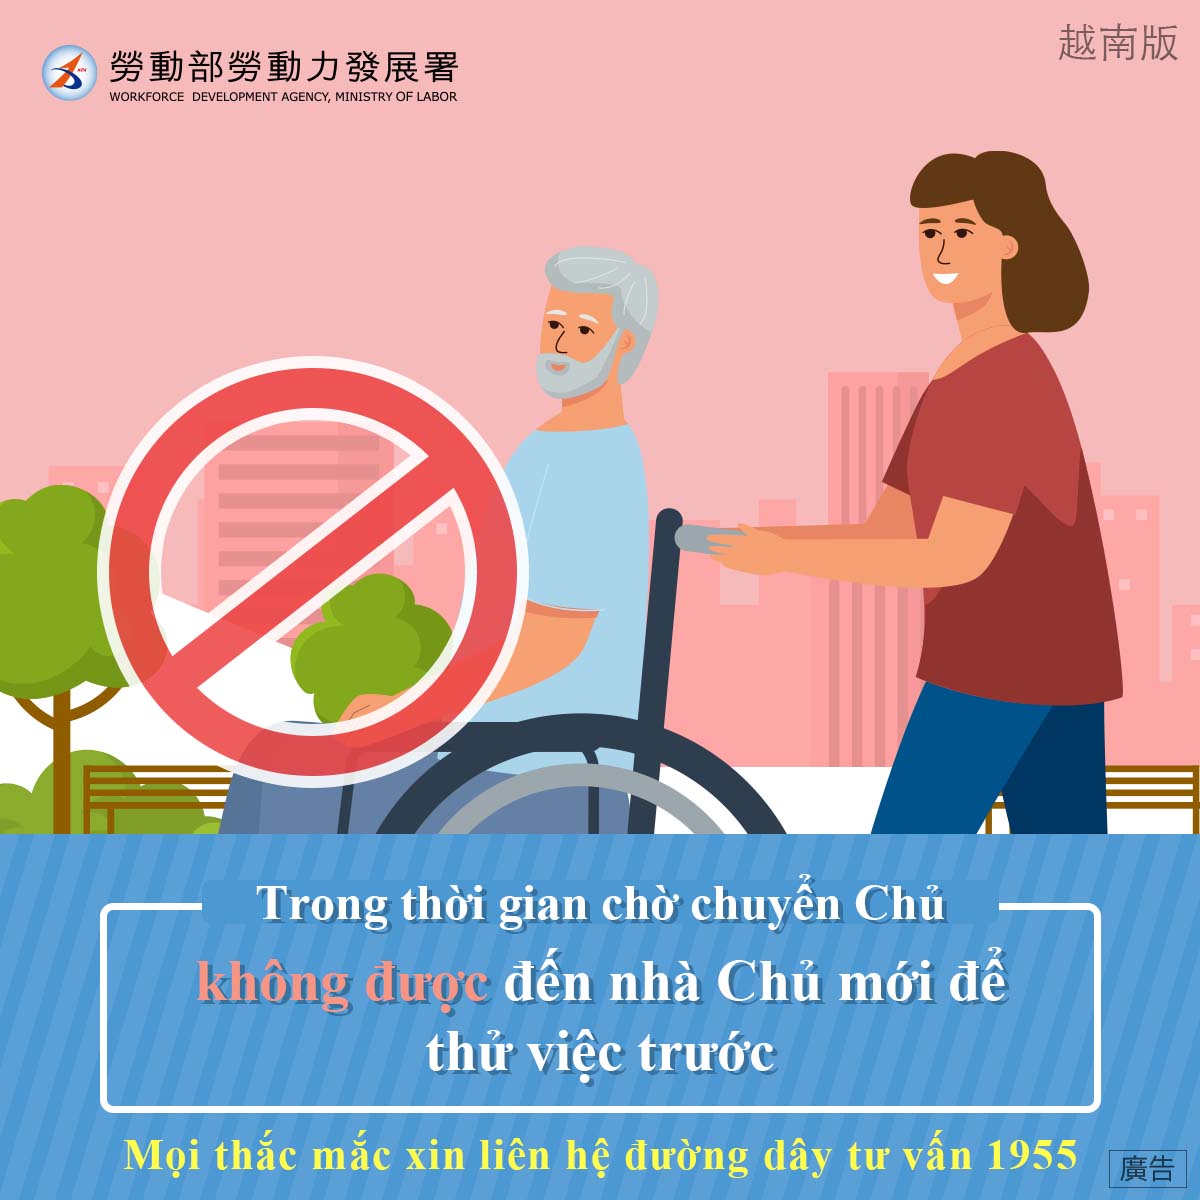 轉換雇主期間不可試用-越南文